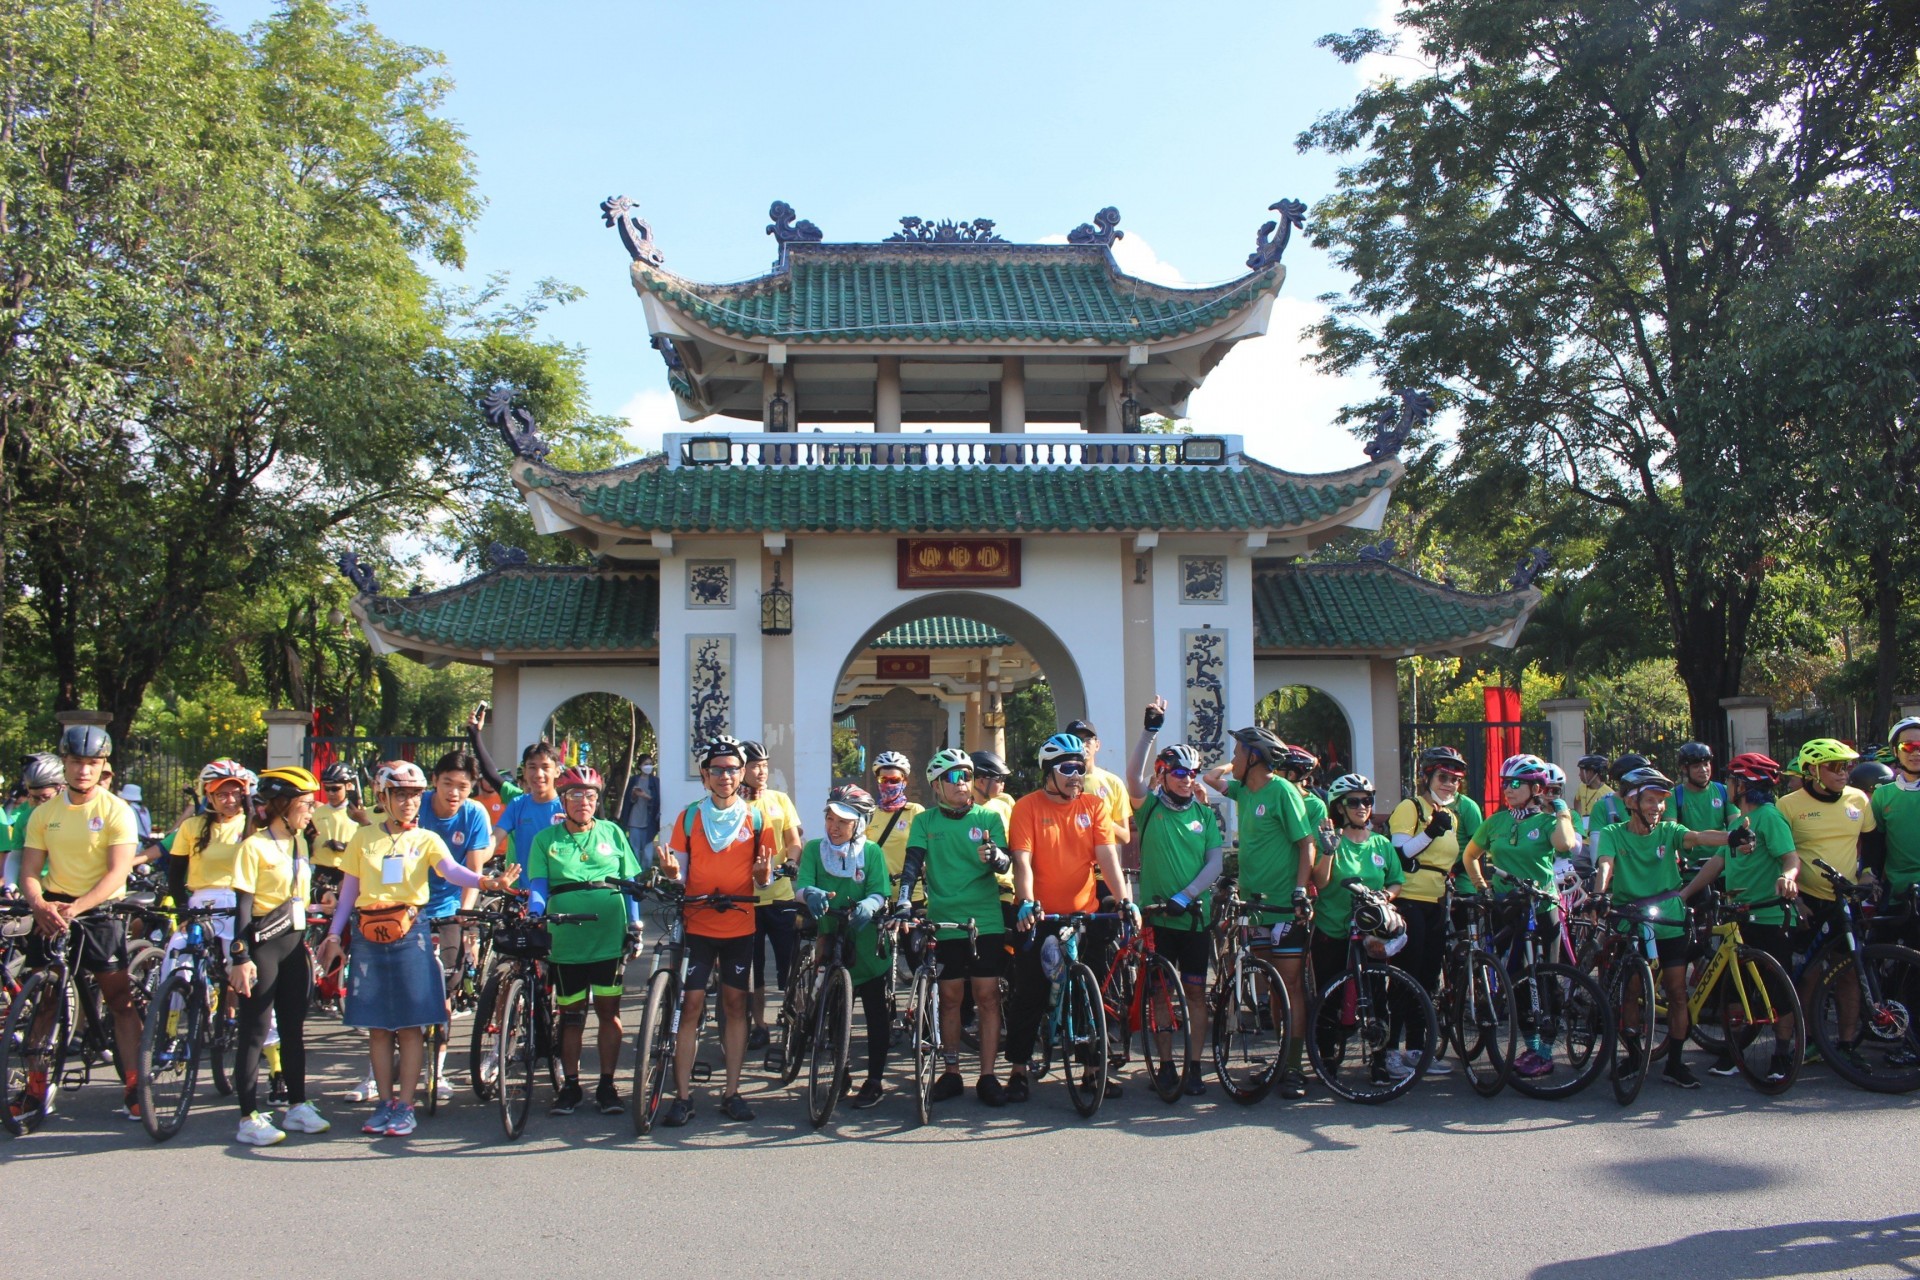 Hơn một ngàn vận động viên tham gia chương trình chạy xe đạp cộng đồng “Hành trình về di sản” vì người nghèo TP.Biên Hoà.